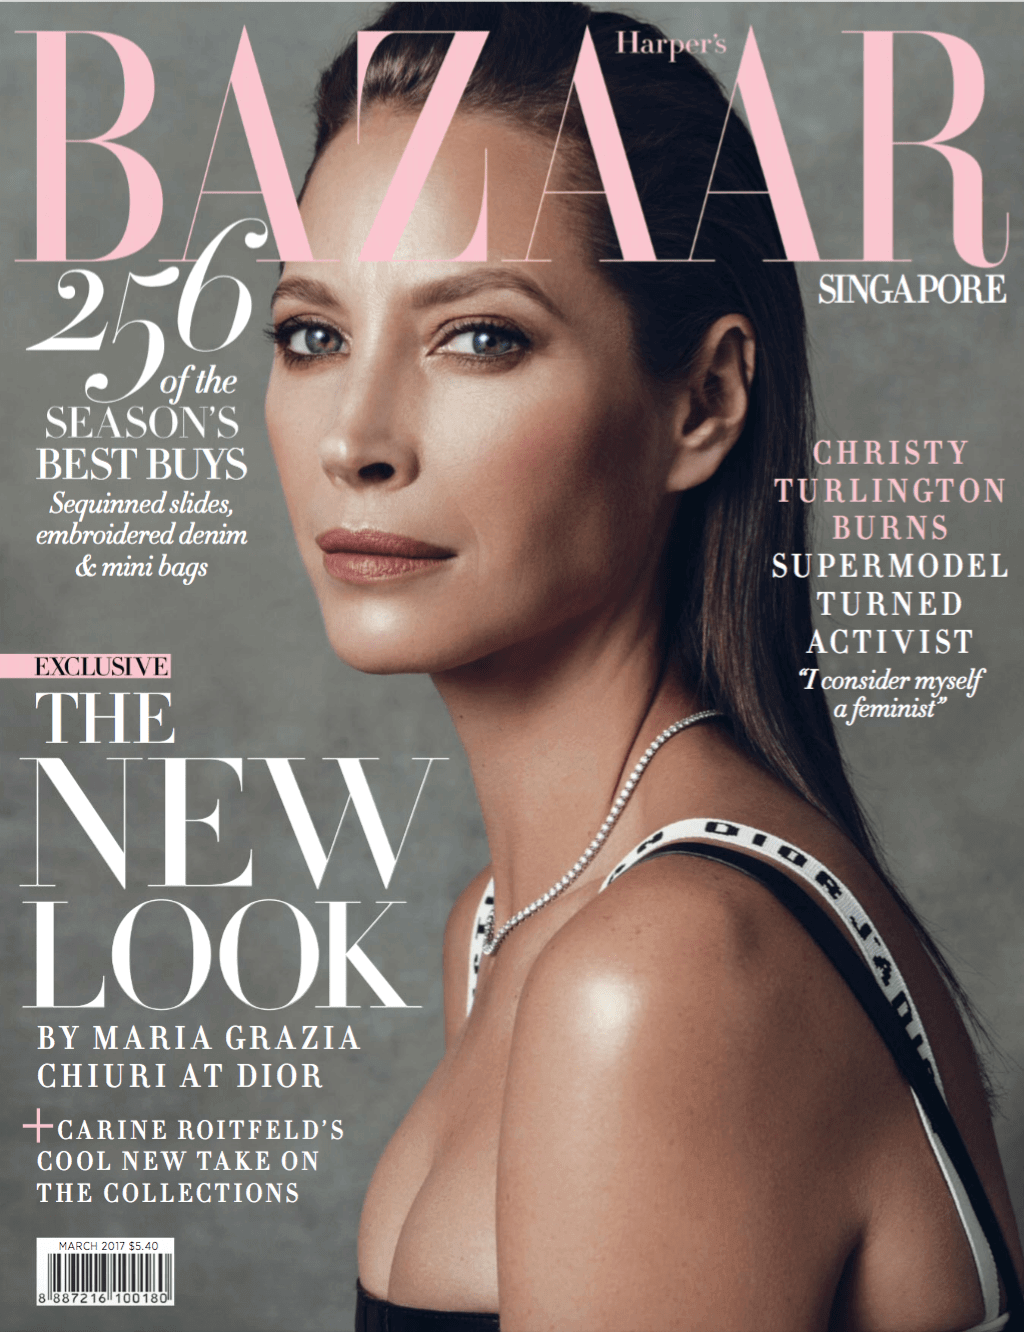 Harper's Bazaar March 2017 Issue